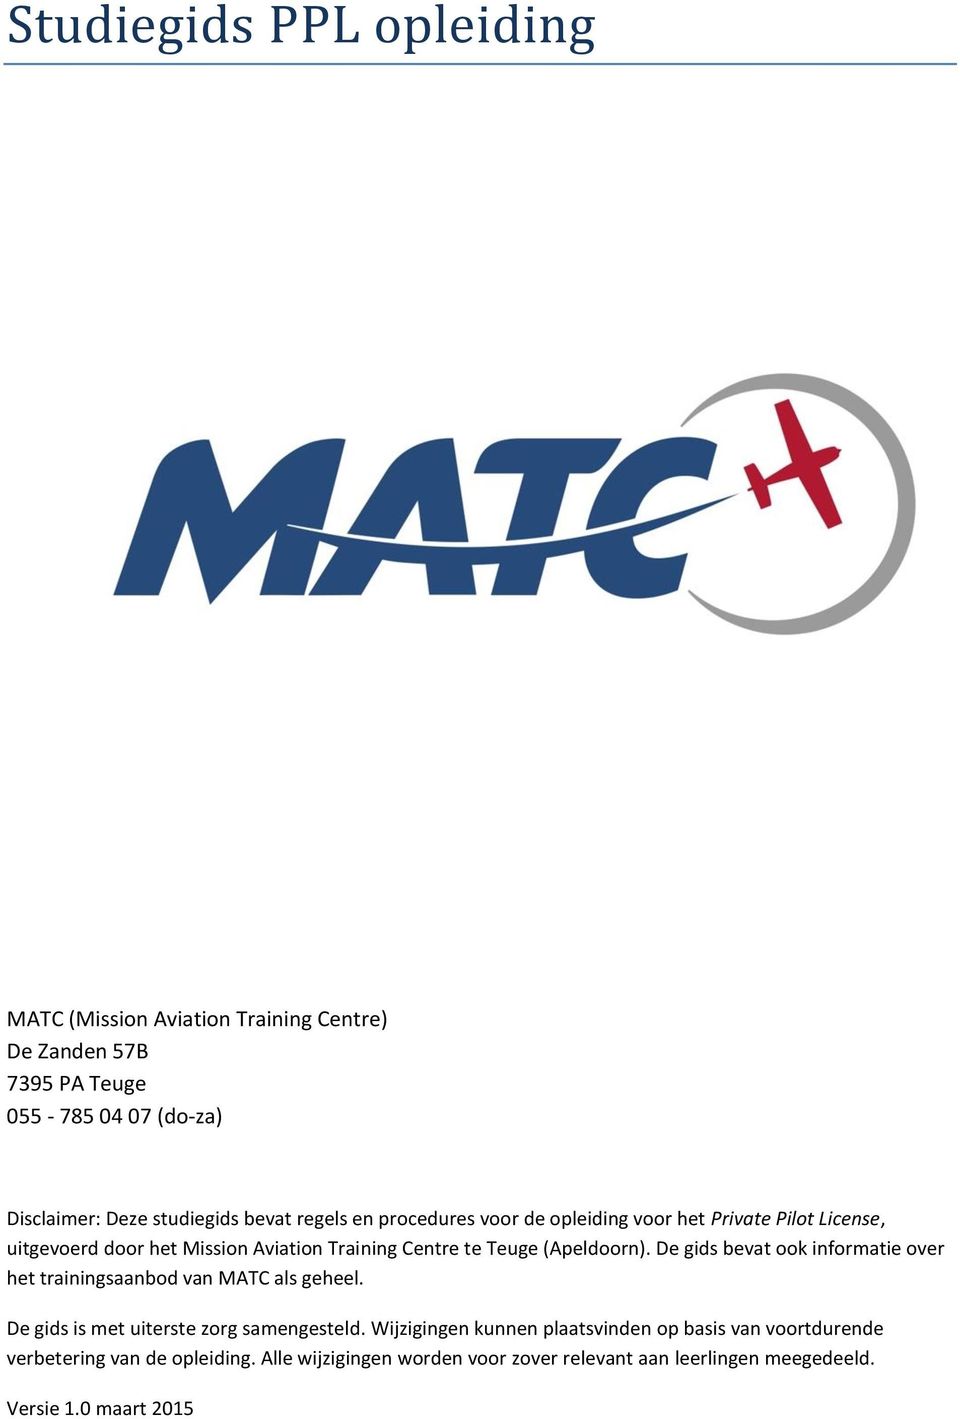 De gids bevat ook informatie over het trainingsaanbod van MATC als geheel. De gids is met uiterste zorg samengesteld.